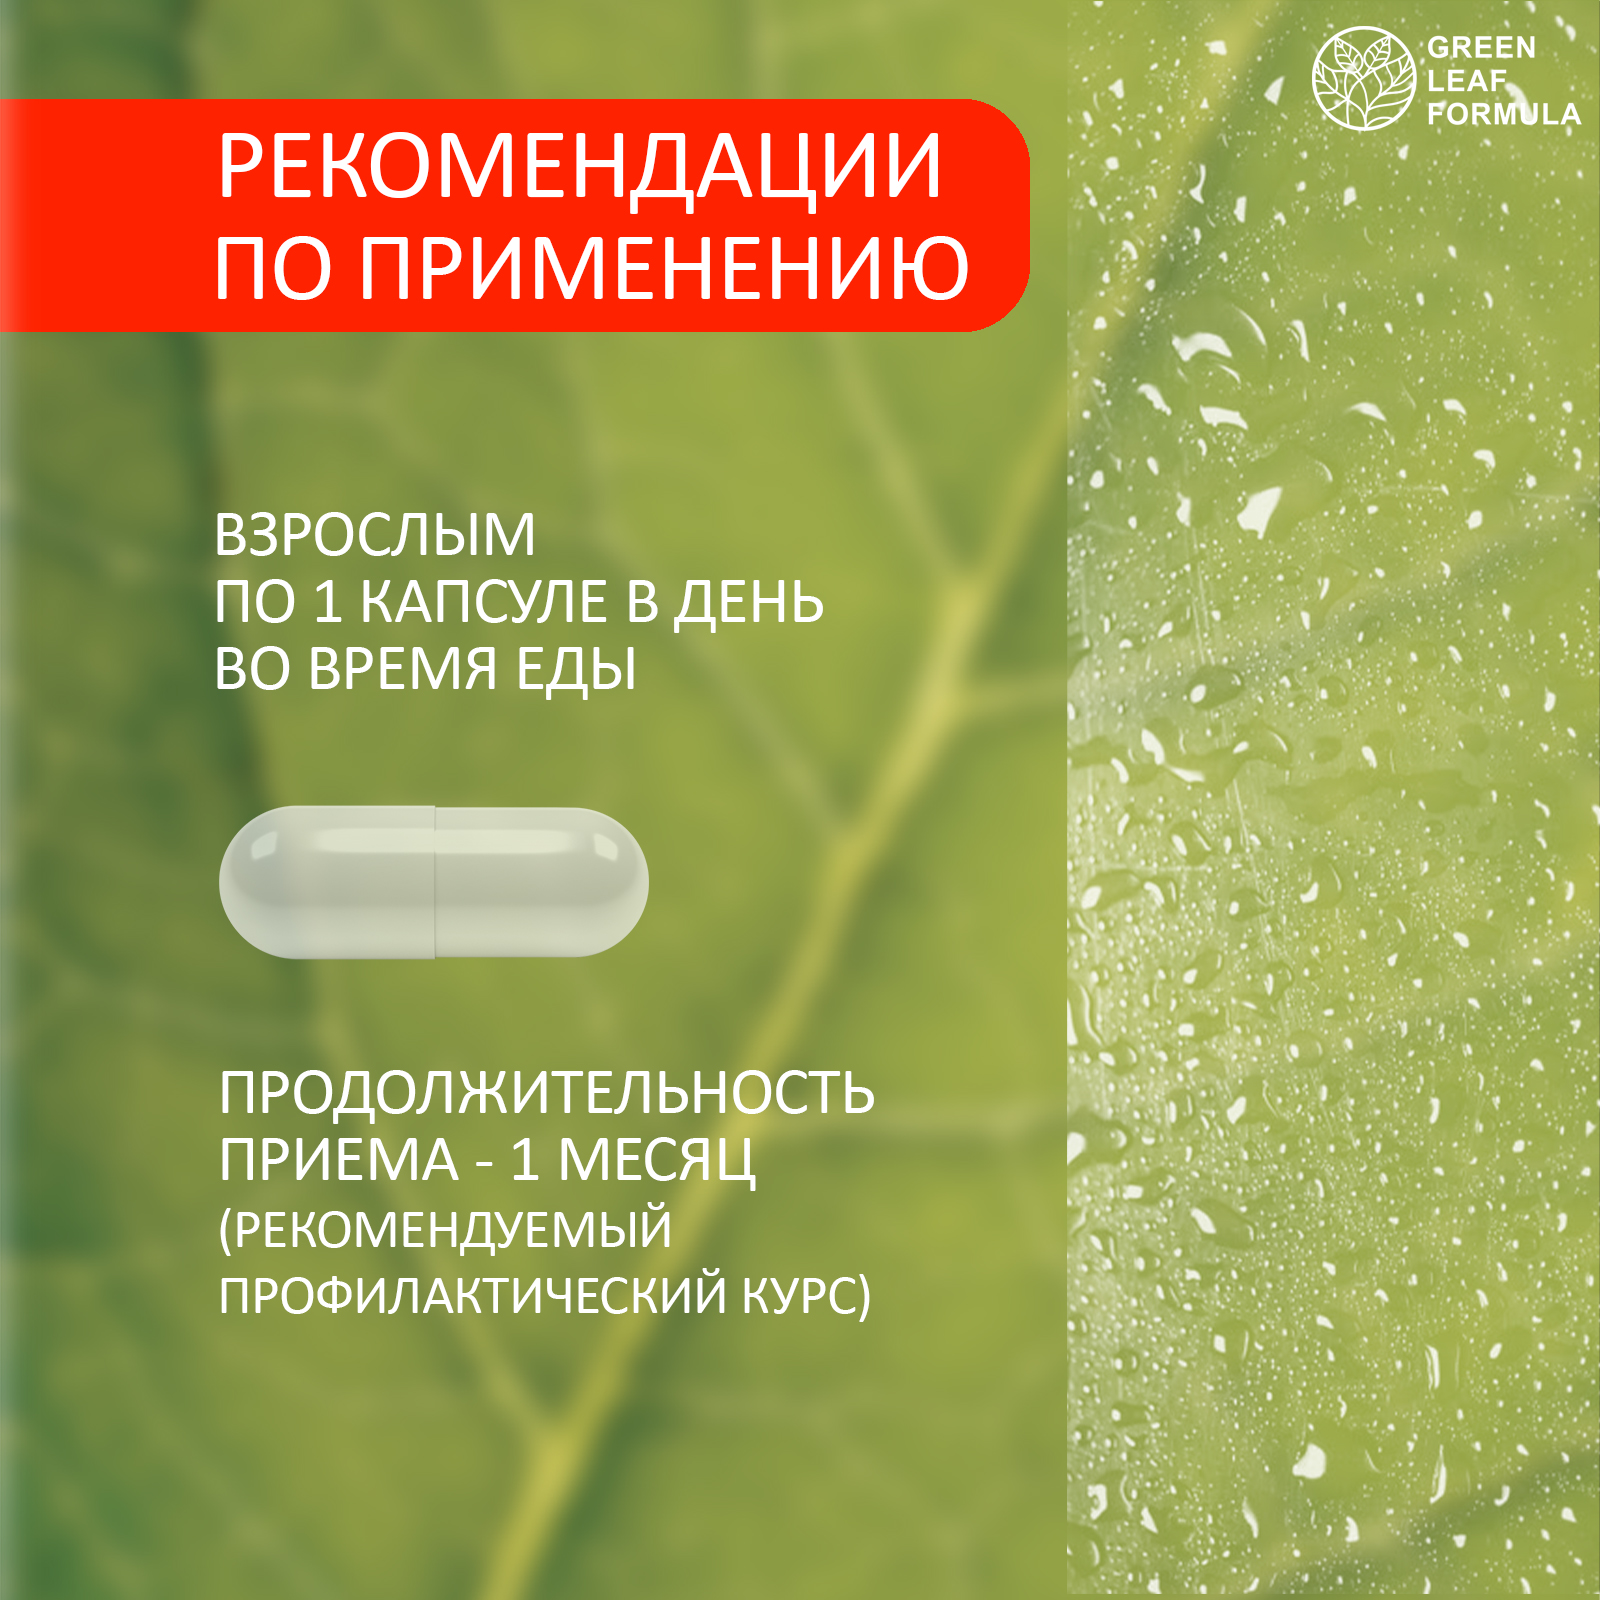 Пробиотик для женщин Green Leaf Formula фитоэстрогены витамин Д3 600 МЕ масло МСТ для энергии - фото 15